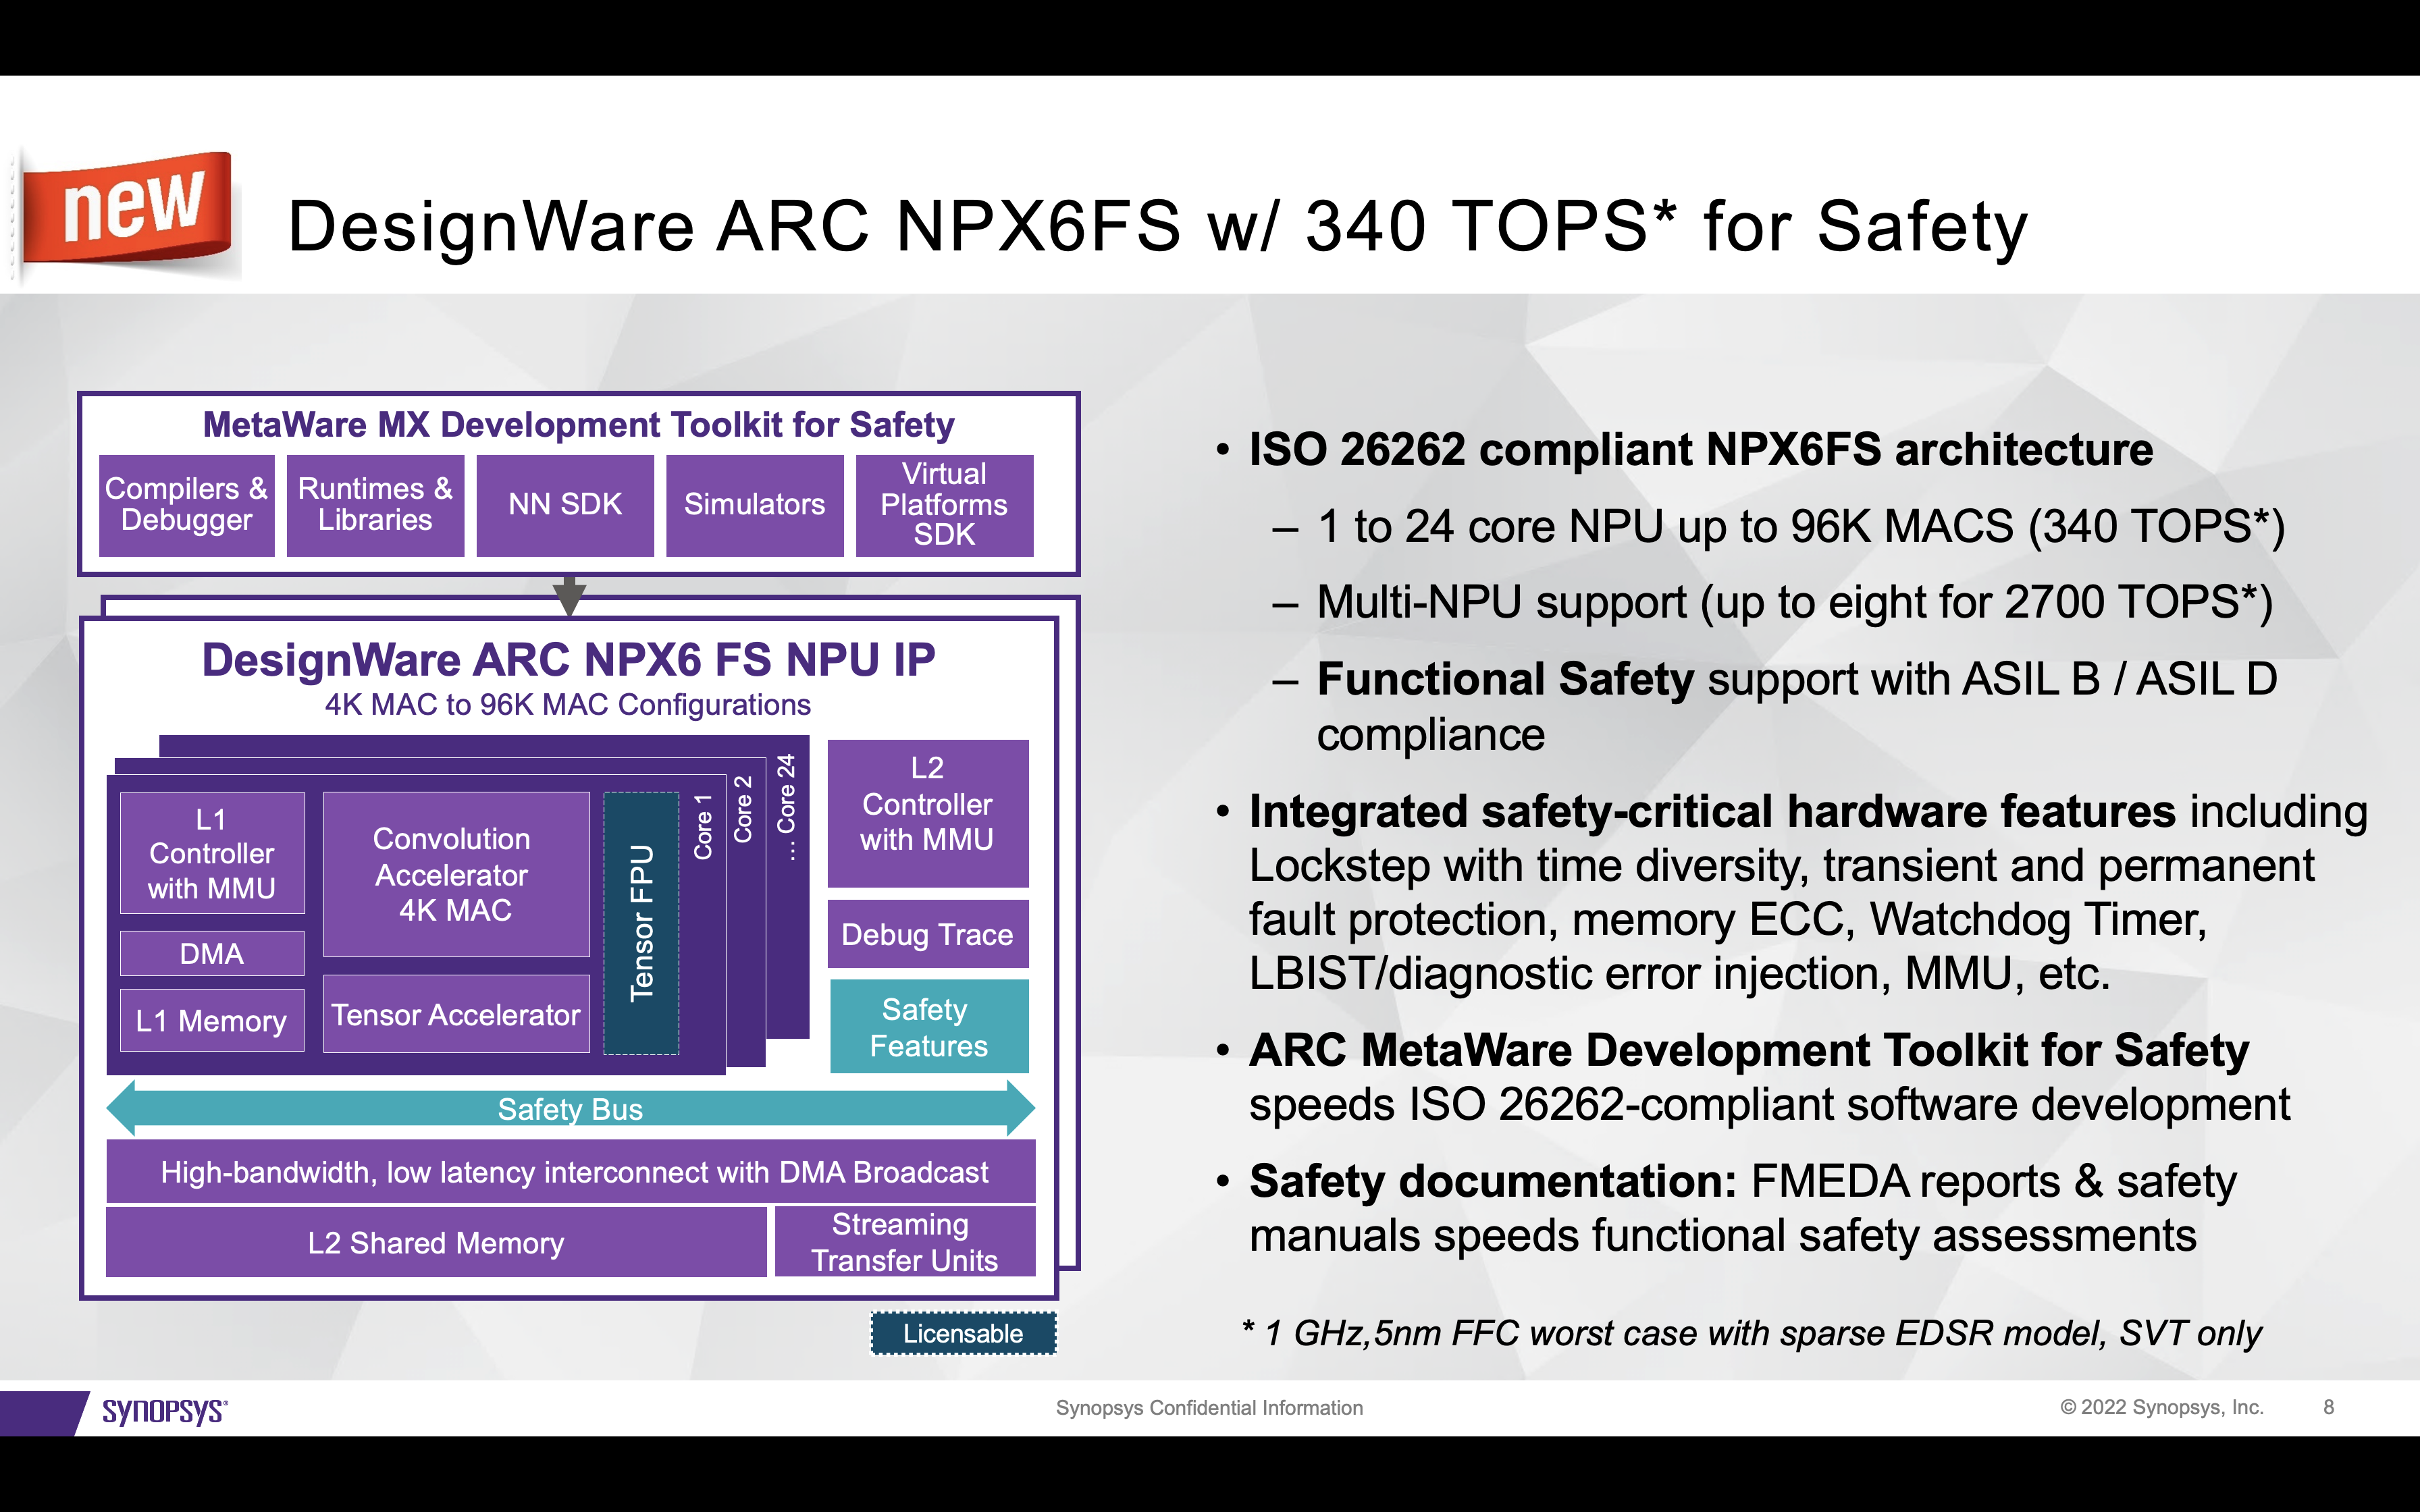 ARC NPX6FS 340 TOPS